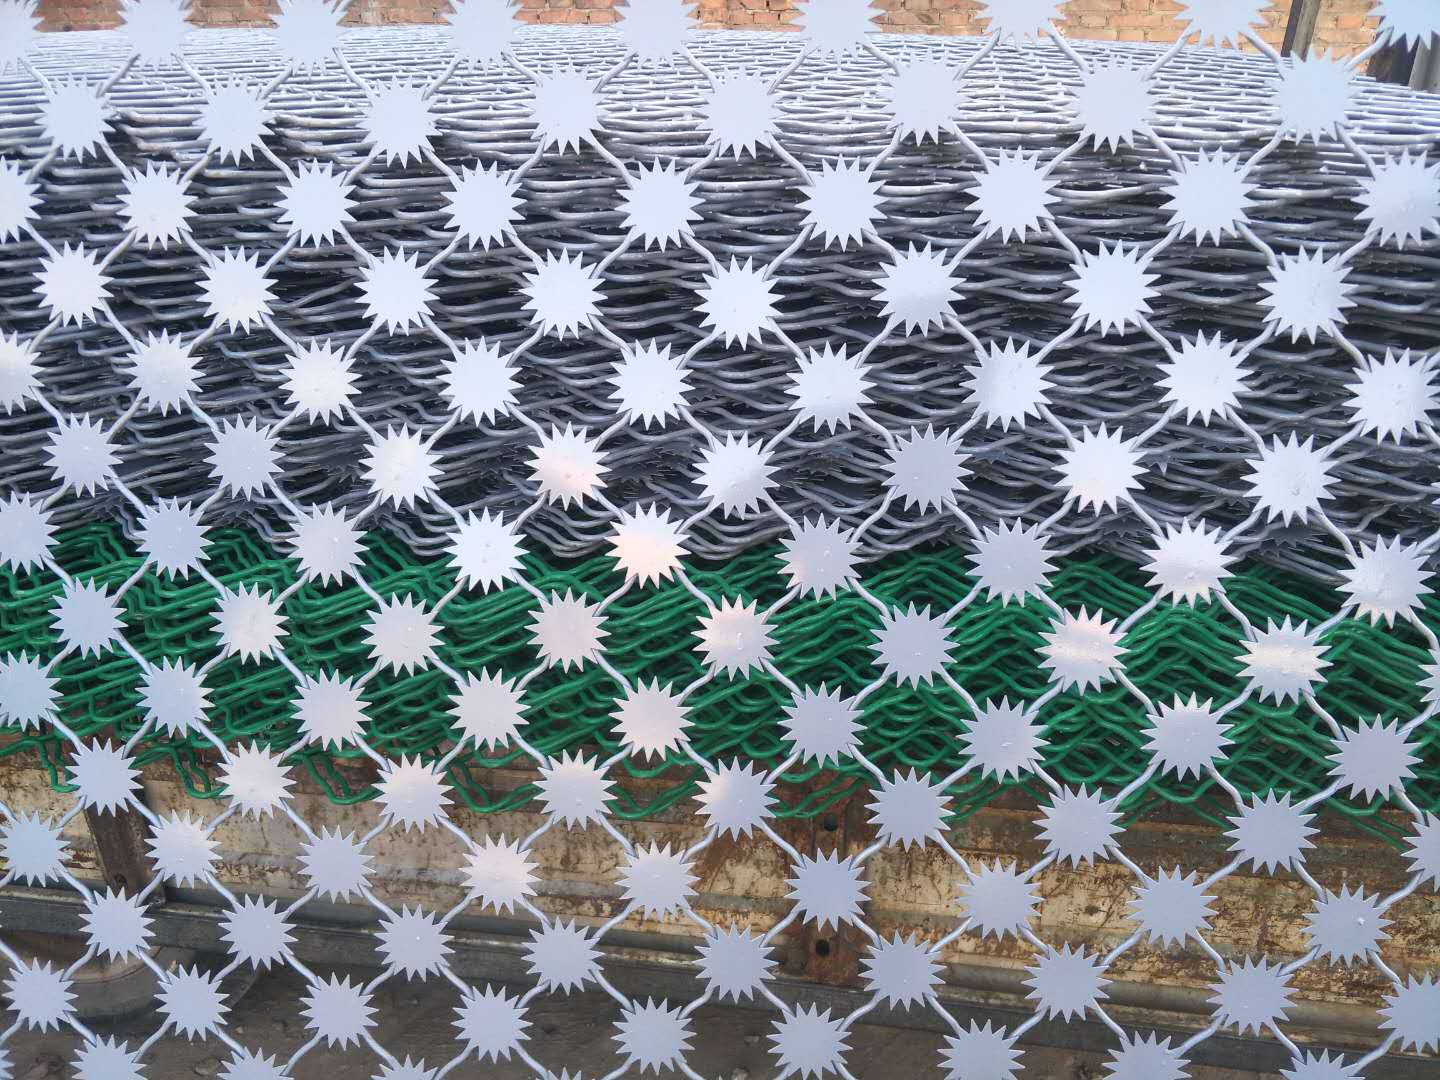 安平县隆帆丝网有限公司生产的塑灰监狱专用美格网，型号为550丝9孔刺片为7公分1.2厚，价格75元每平方米。